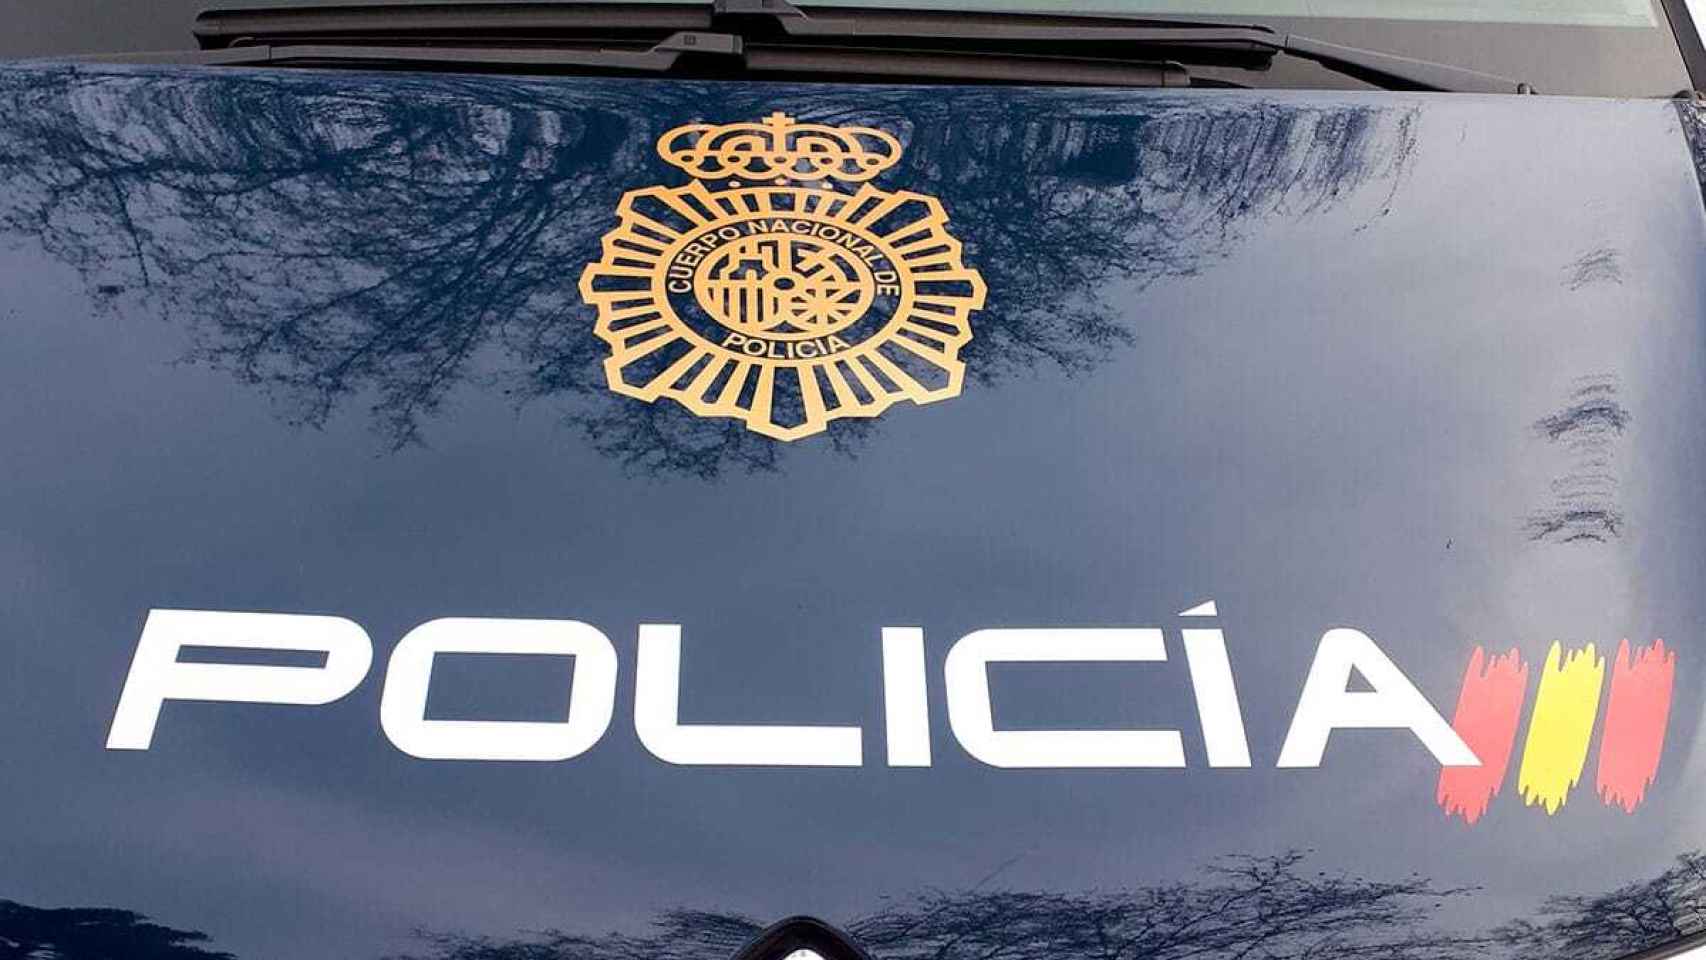 Dos detenidos en Valladolid por el robo con fuerza de casi 1.000 euros en un domicilio